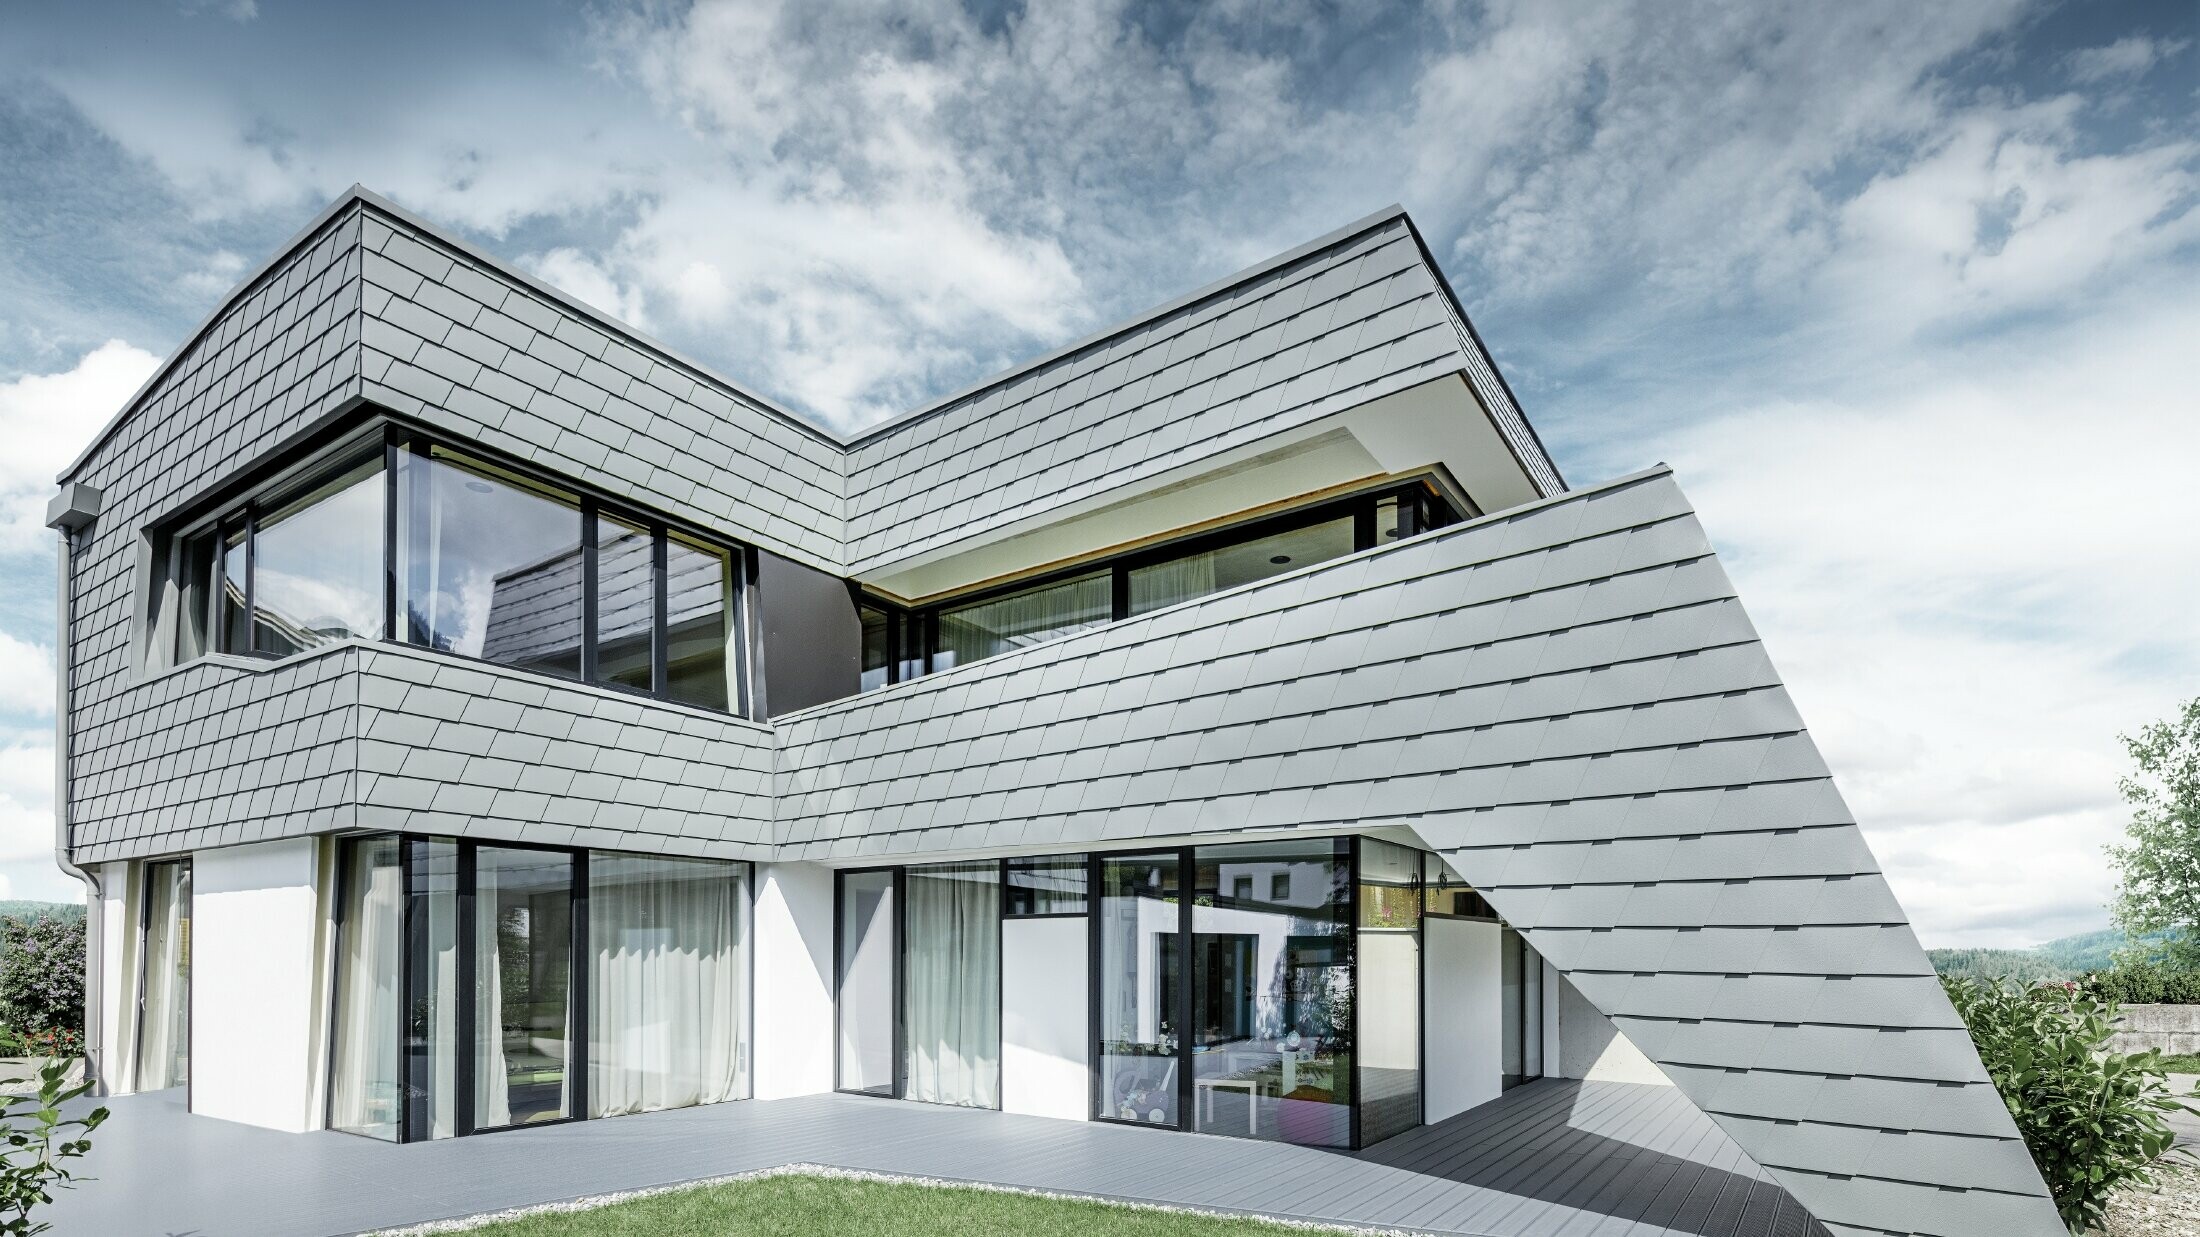 Maison individuelle moderne au toit plat avec de grandes baies vitrées — Façade réalisée avec des bardeaux PREFA en aluminium de couleur gris souris